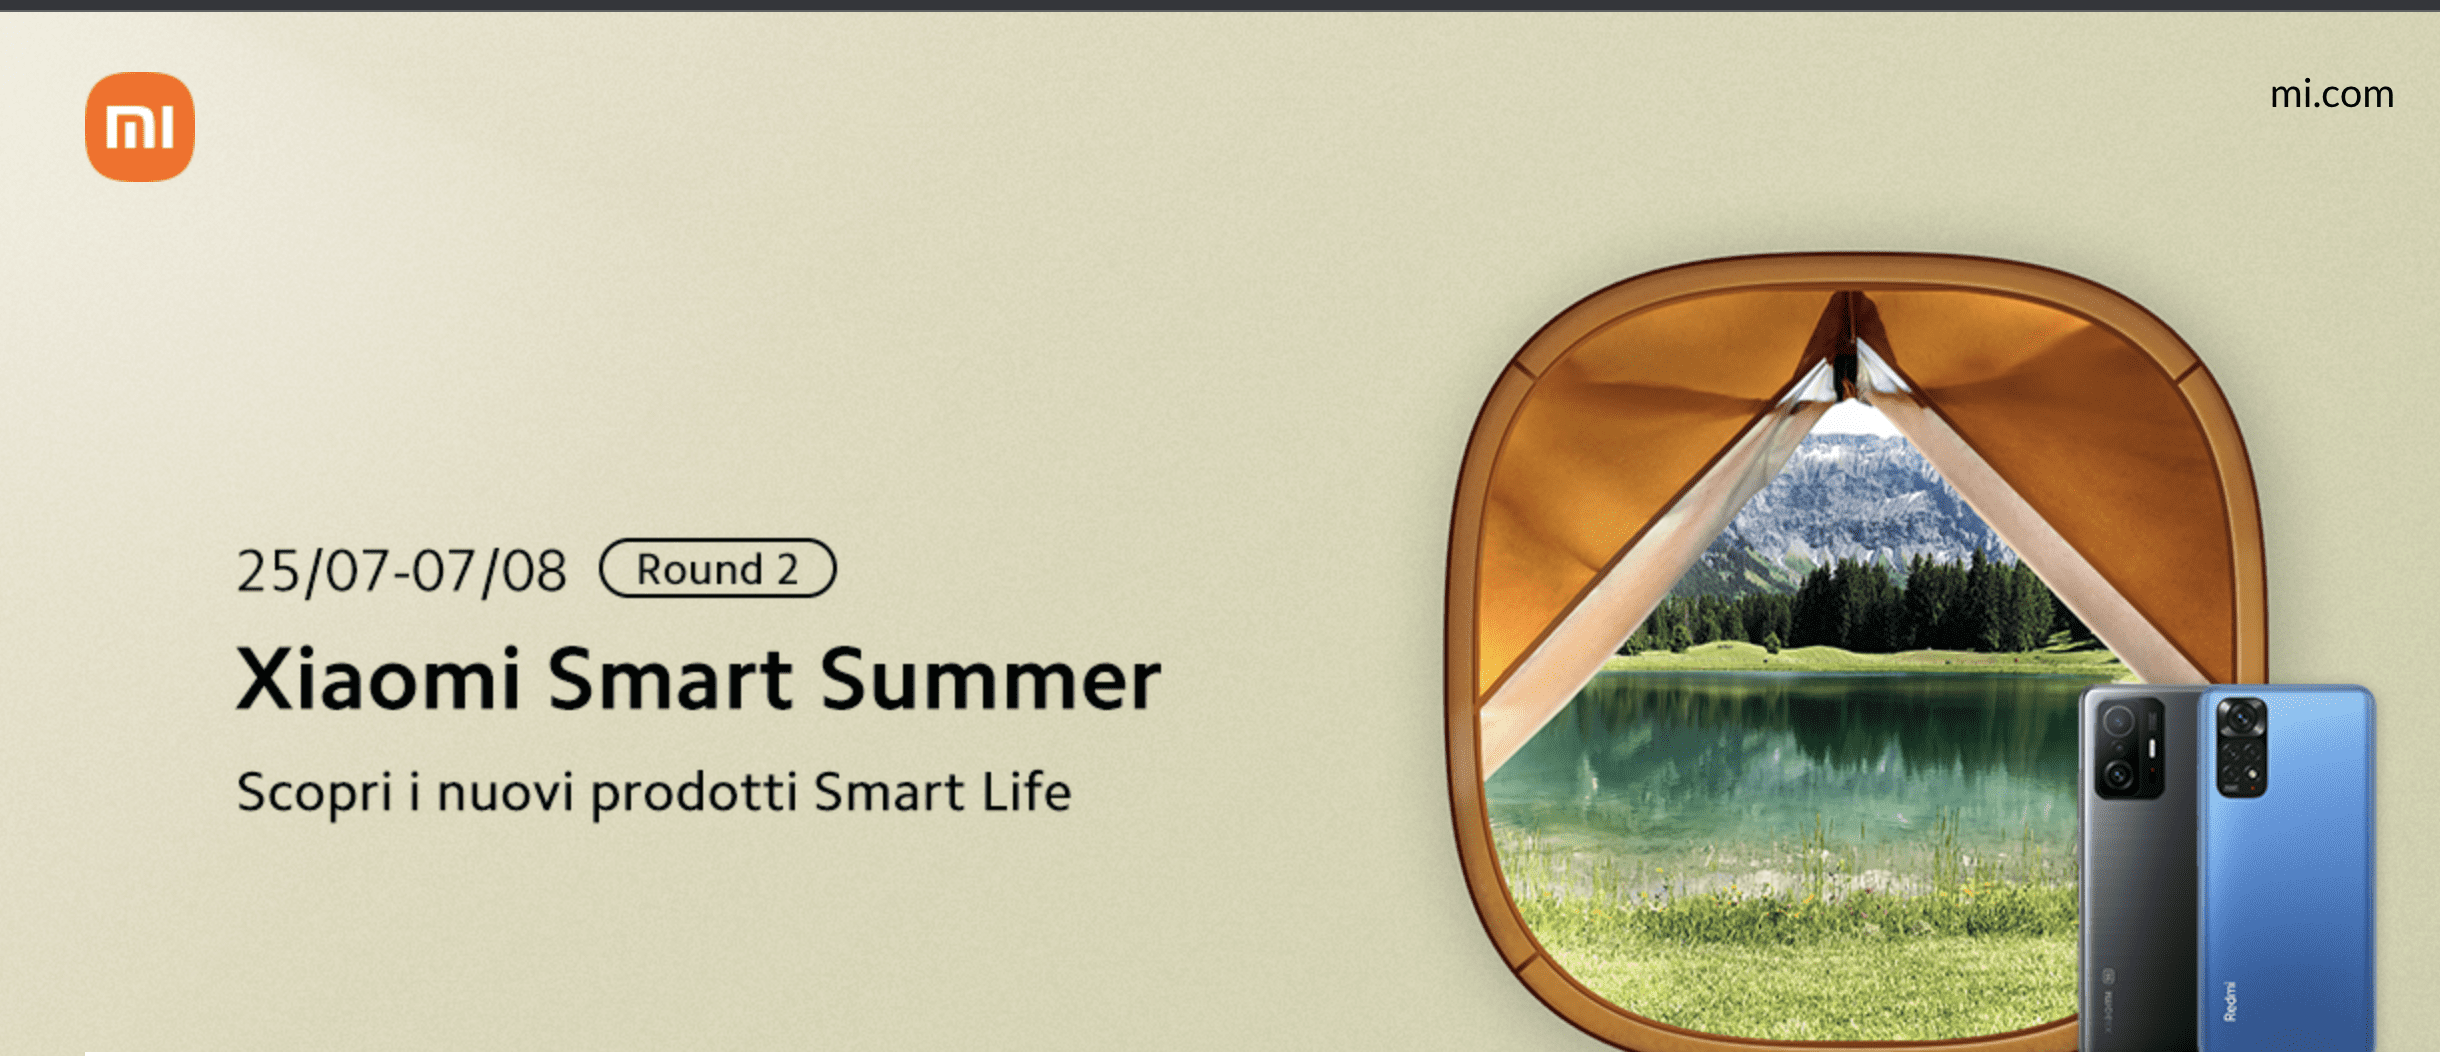 Xiaomi Summer smart: le offerte continuano 